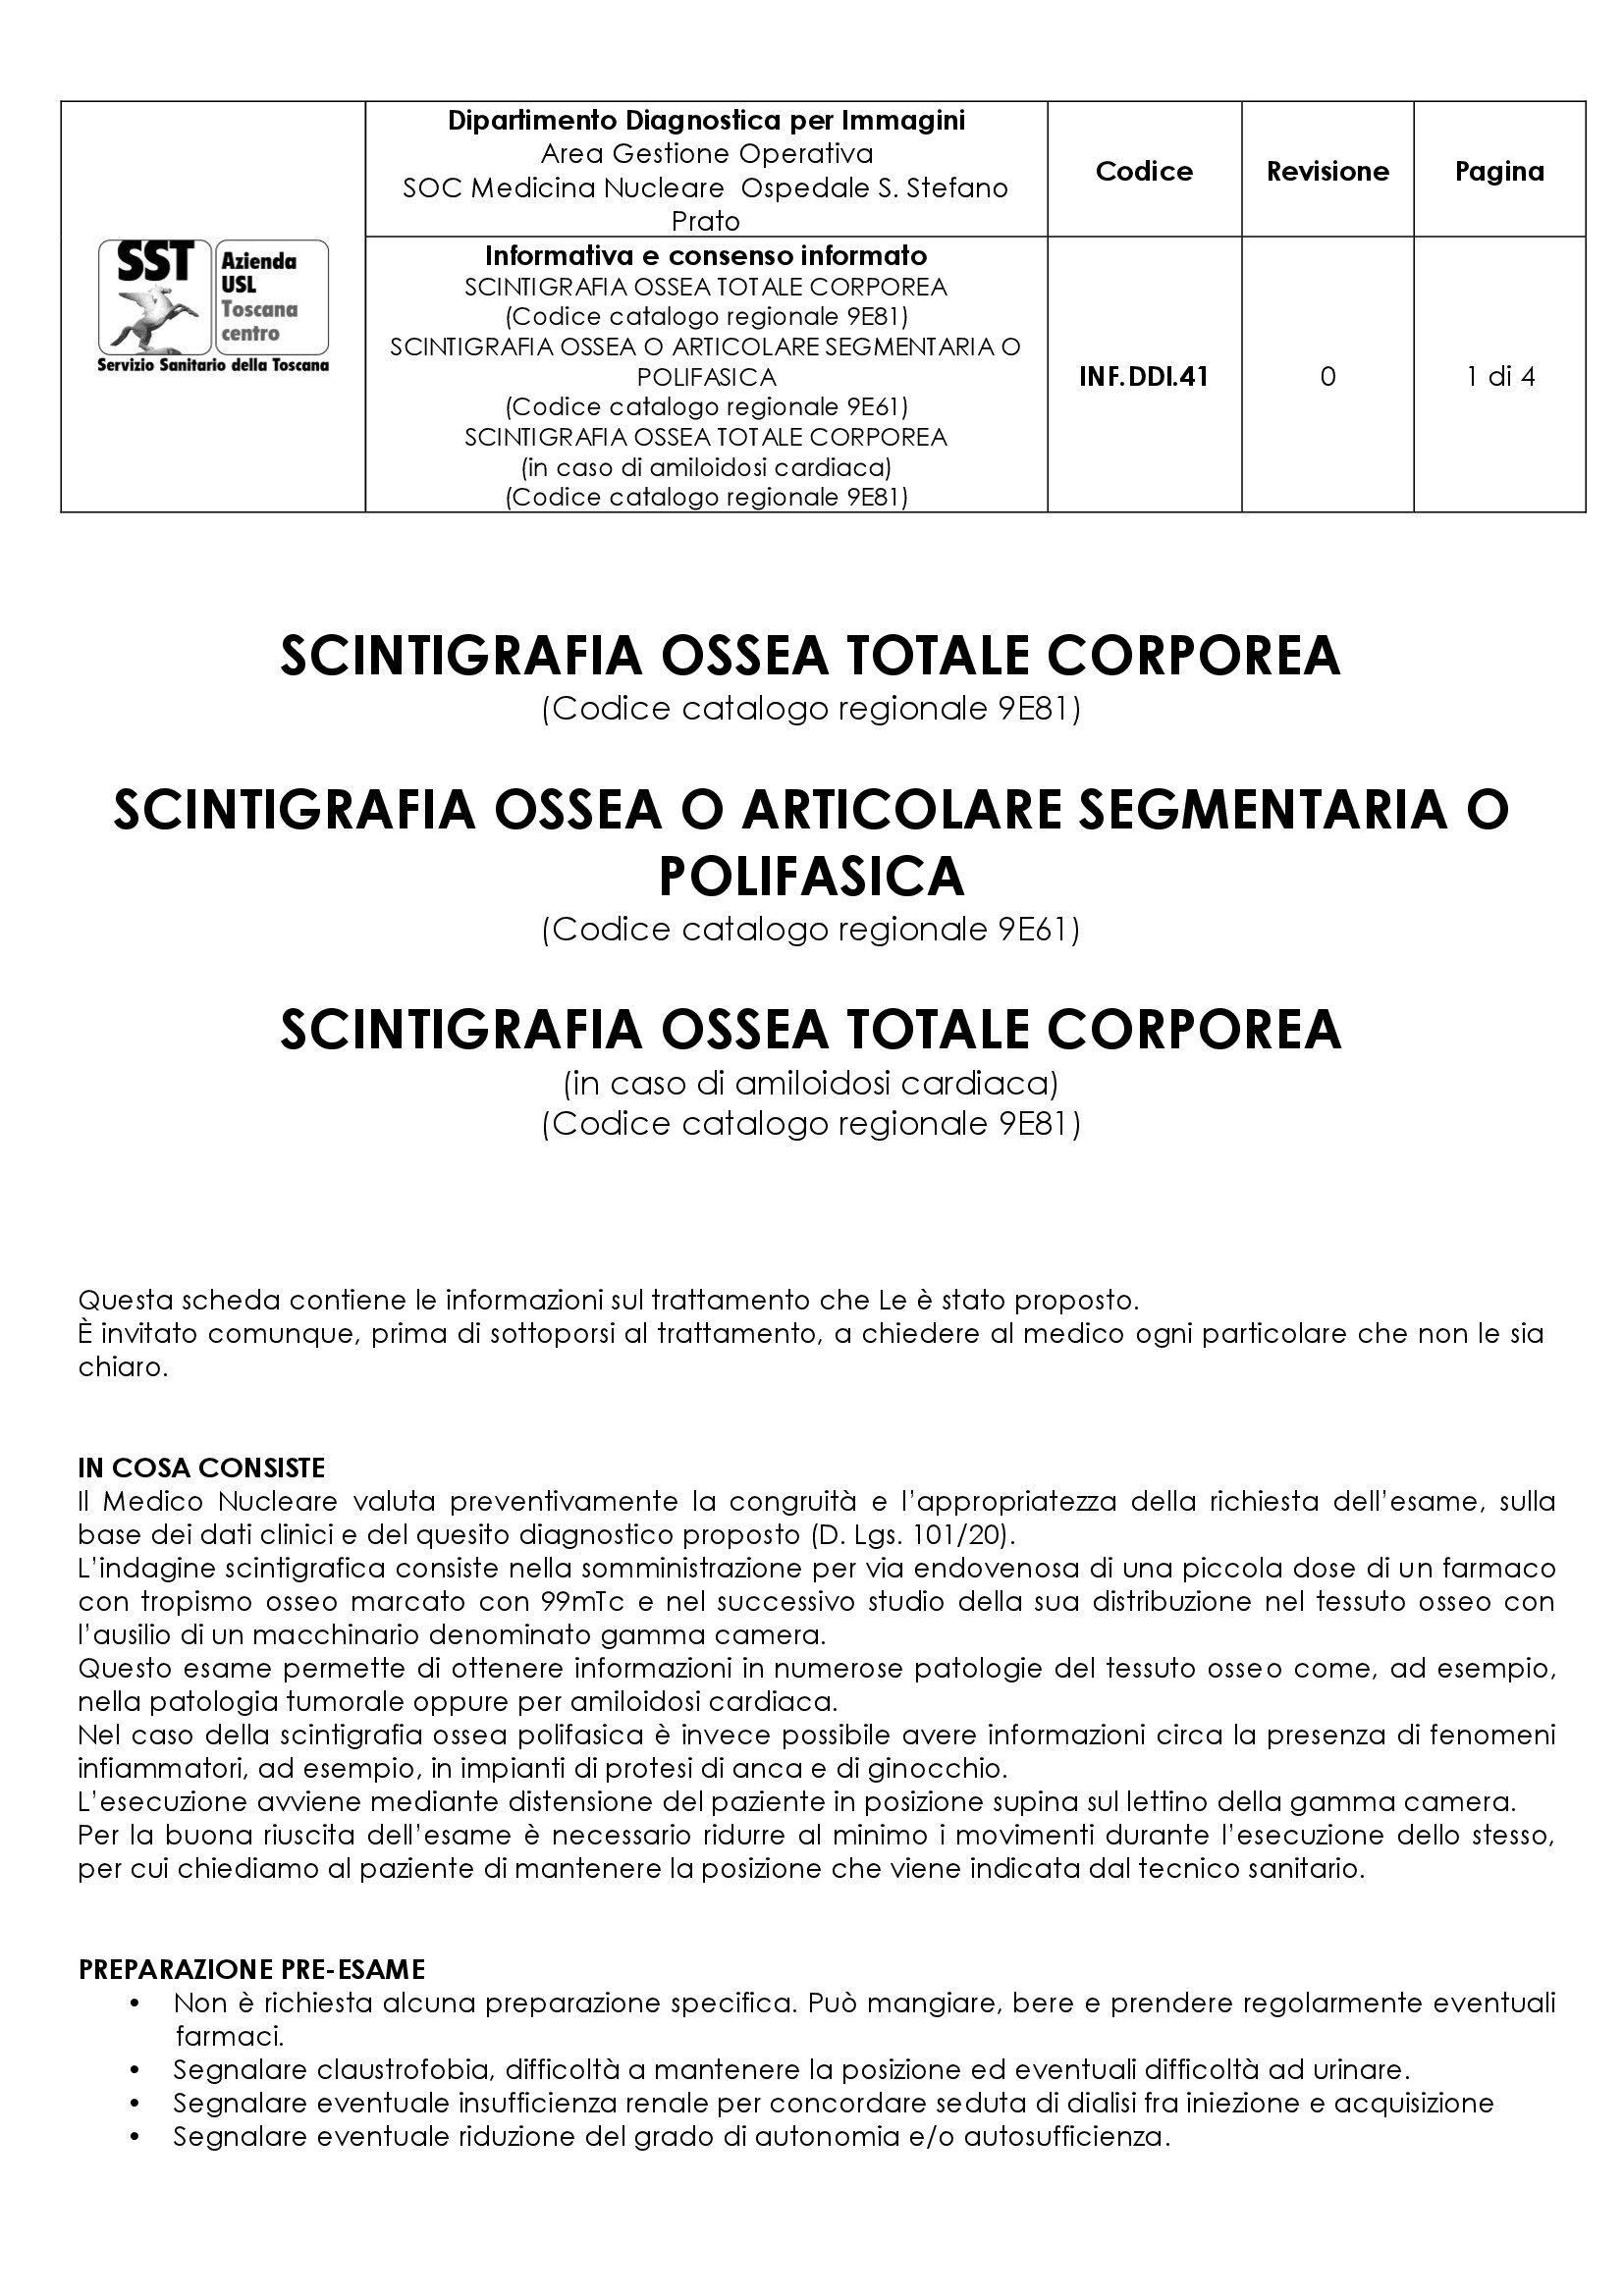 INF.DDI.41 SCINTIGRAFIA OSSEA TOTALE CORPOREA (Codice catalogo regionale 9E81) - SCINTIGRAFIA OSSEA O ARTICOLARE SEGMENTARIA O POLIFASICA (Codice catalogo regionale 9E61) - SCINTIGRAFIA OSSEA TOTALE CORPOREA (in caso di amiloidosi cardiaca)